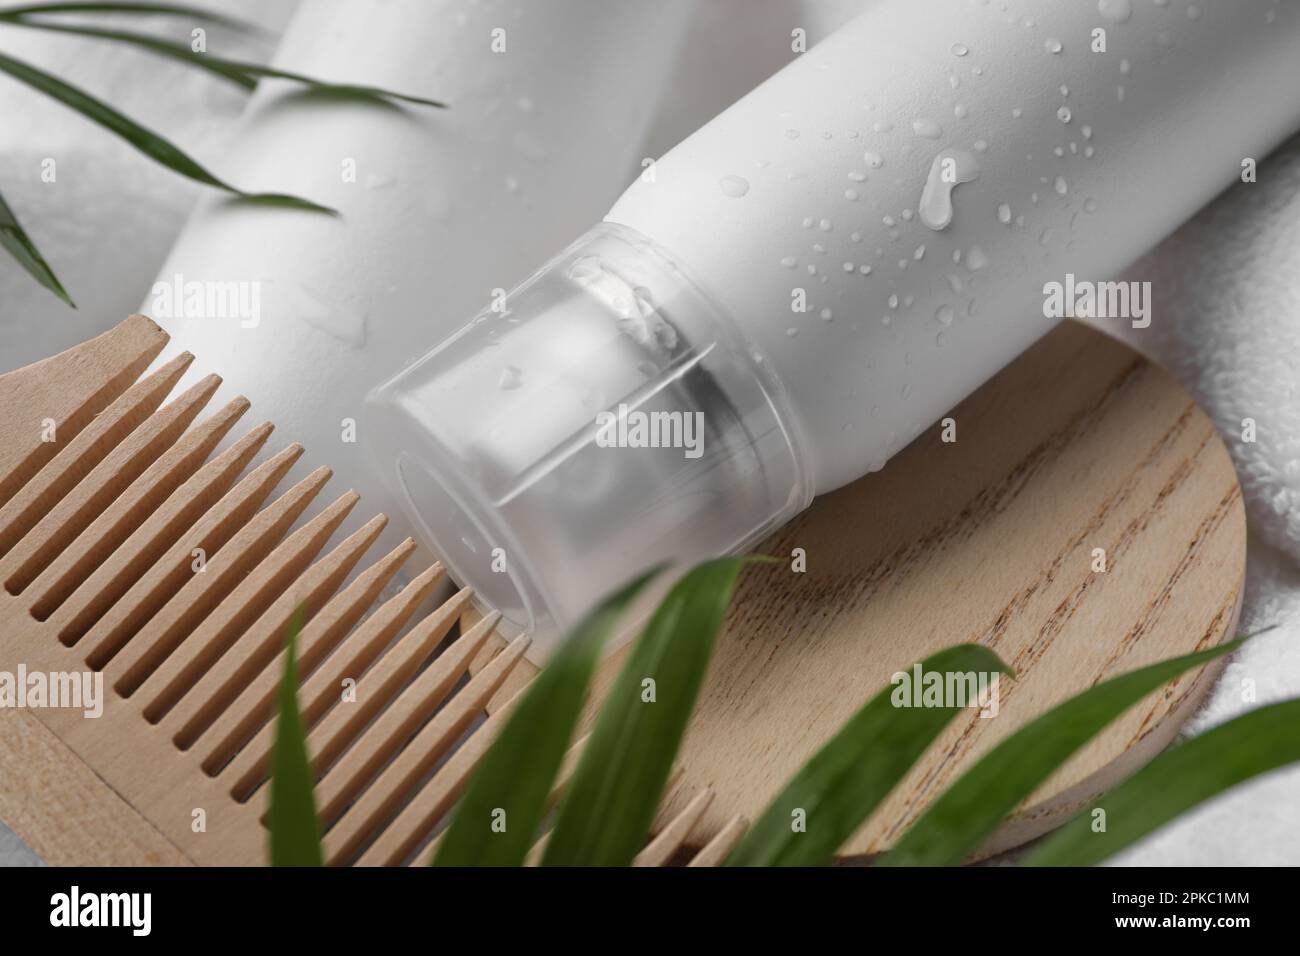 Nassflasche mit Shampoo-Spray und Holzkamm auf weißem Handtuch, Nahaufnahme Stockfoto